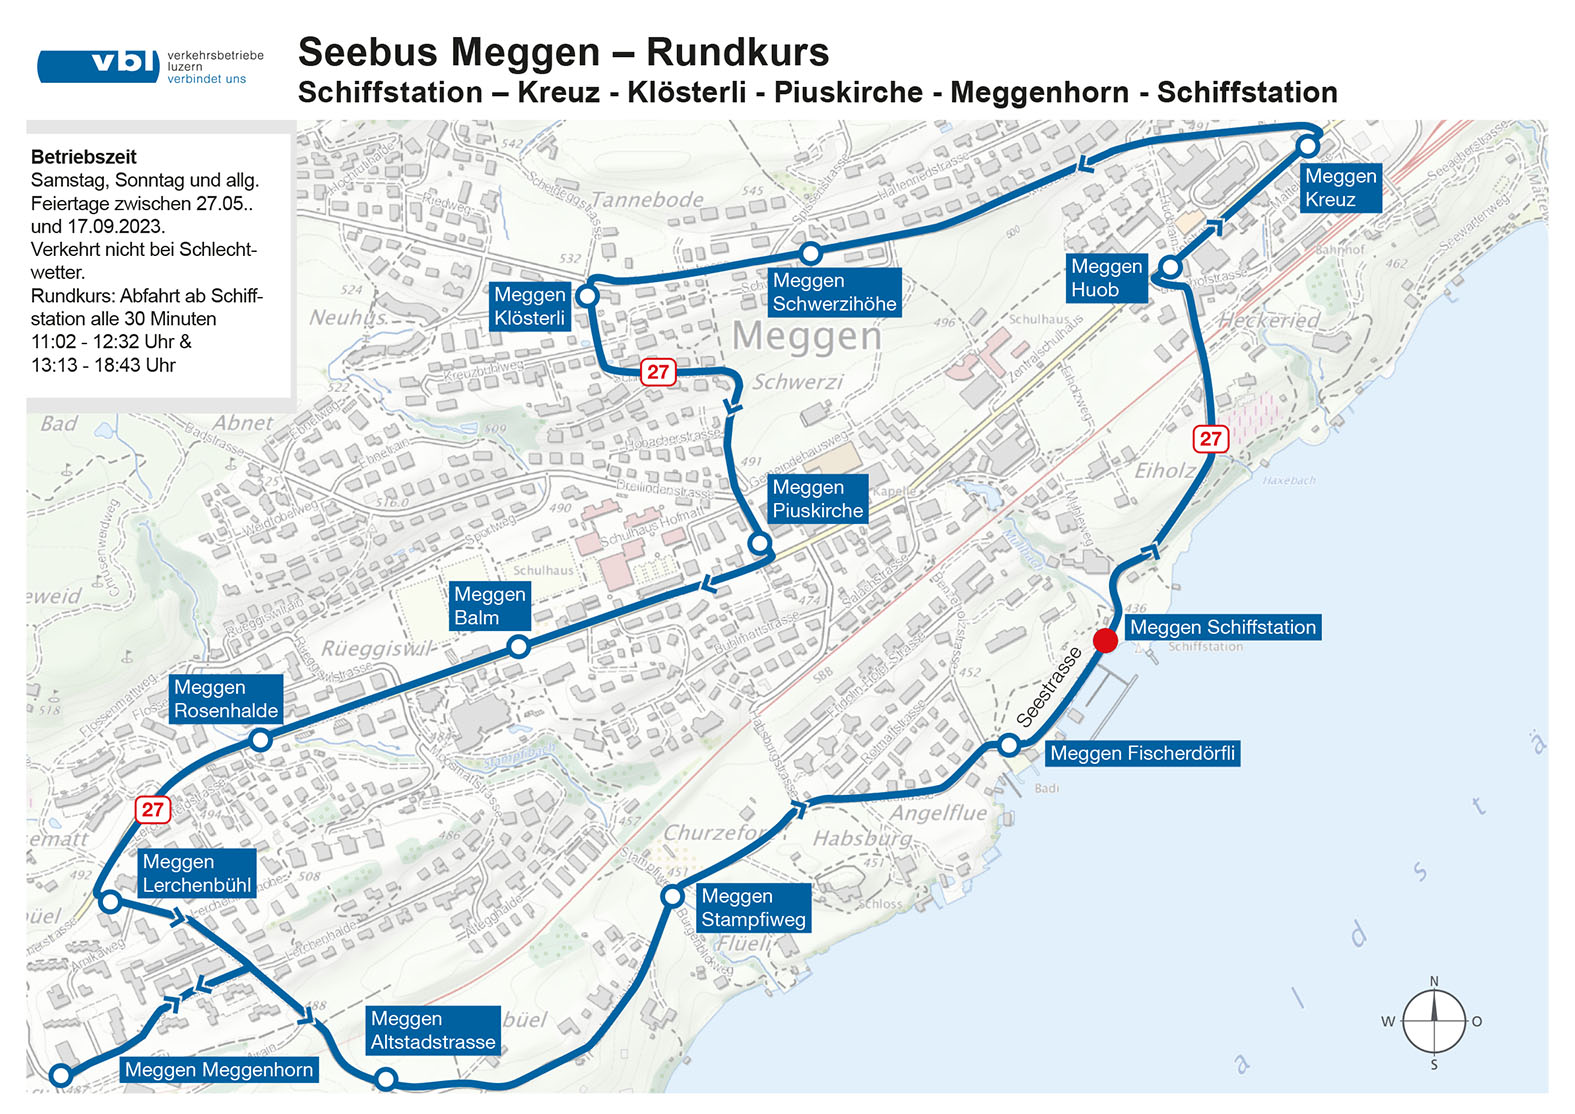 Die Karte zeigt den Rundkurs des Megger Seebusses in der Saison 2023.